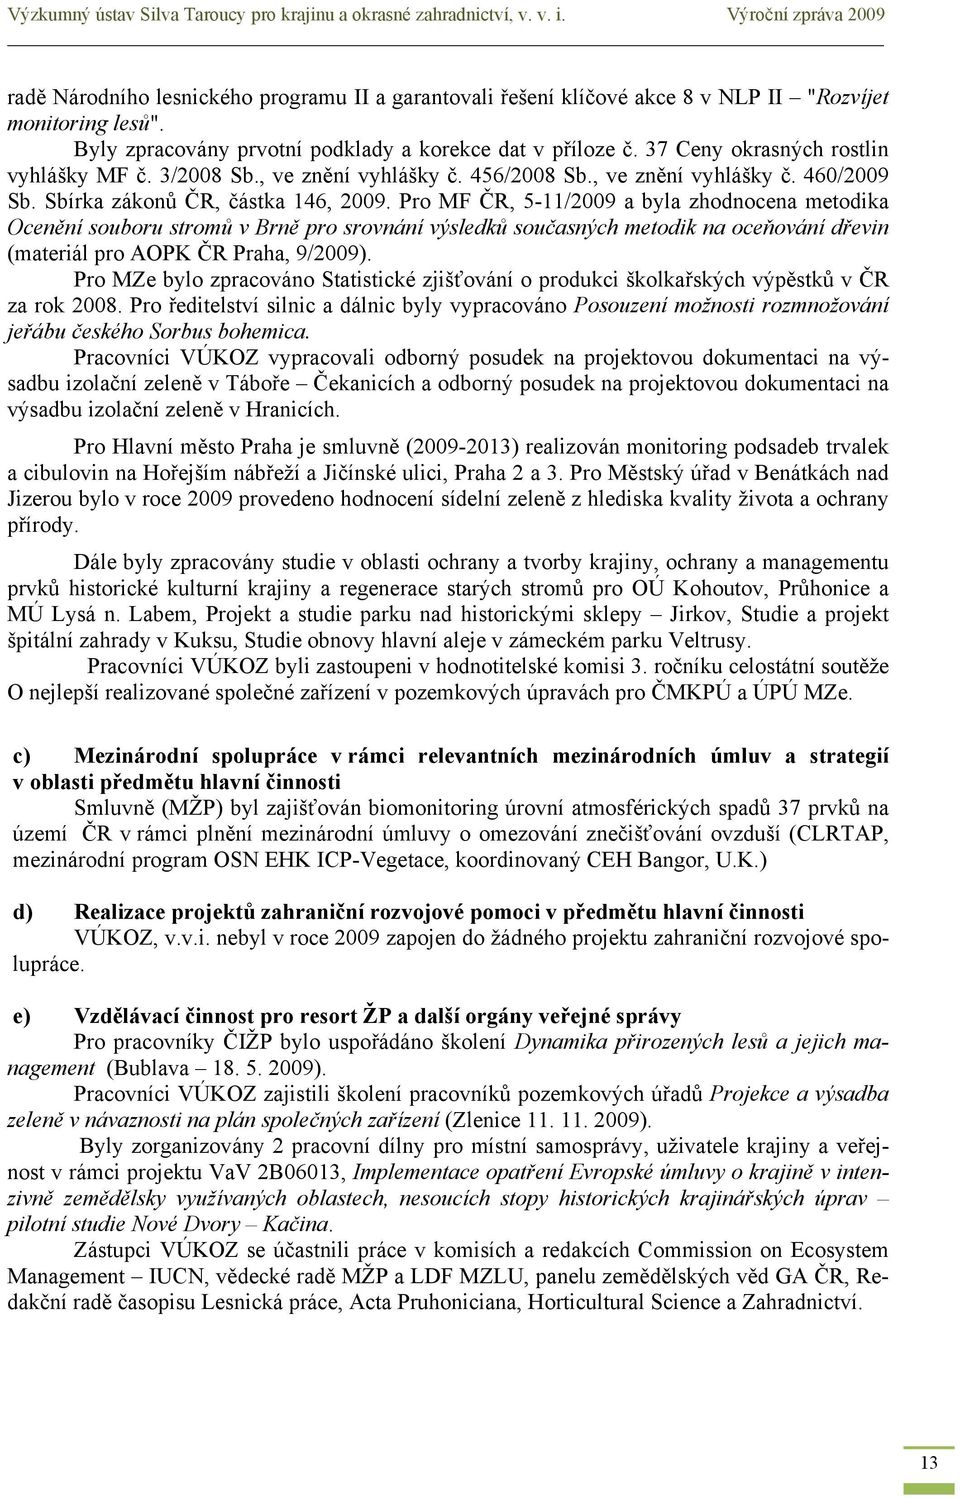 37 Ceny okrasných rostlin vyhlášky MF č. 3/2008 Sb., ve znění vyhlášky č. 456/2008 Sb., ve znění vyhlášky č. 460/2009 Sb. Sbírka zákonů ČR, částka 146, 2009.